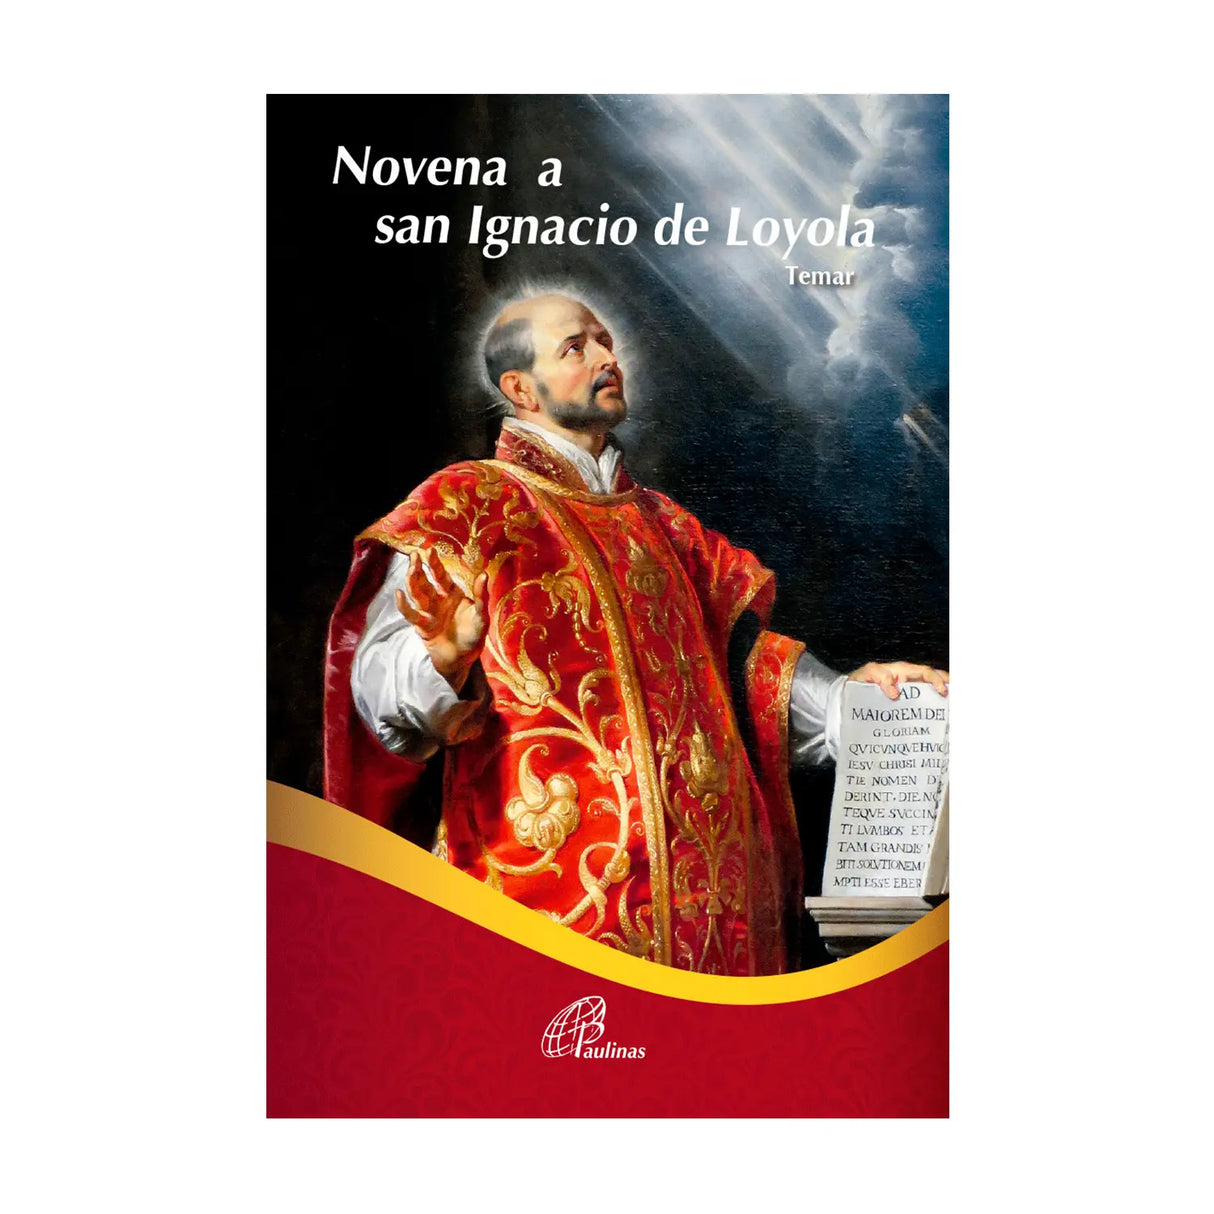 Novena a san Ignacio de Loyola